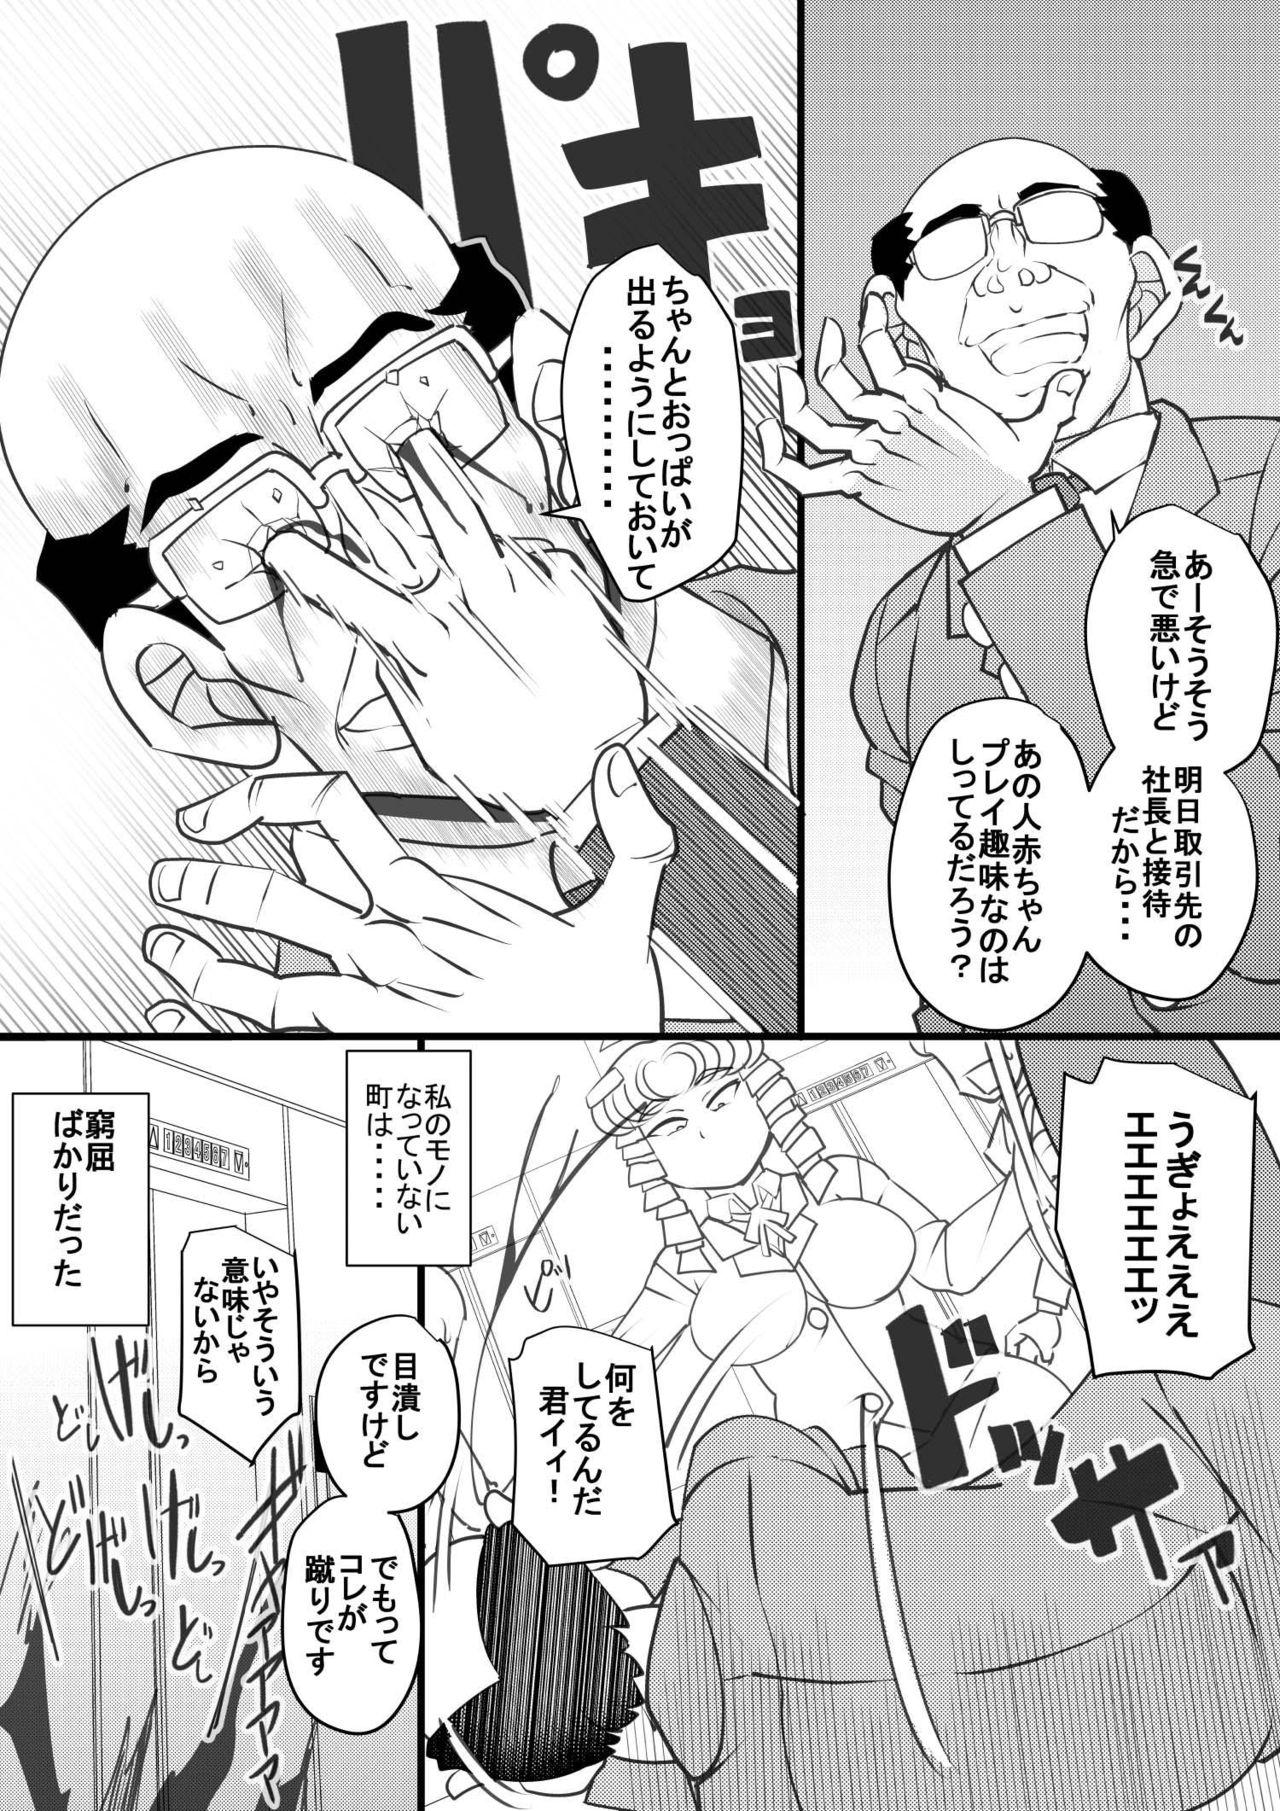 Gaydudes Uchi no Joseito Zenin Haramaseta Kedamono ga Anta no Gakuen ni Iku Rashii yo? 29 - Original Freak - Page 4